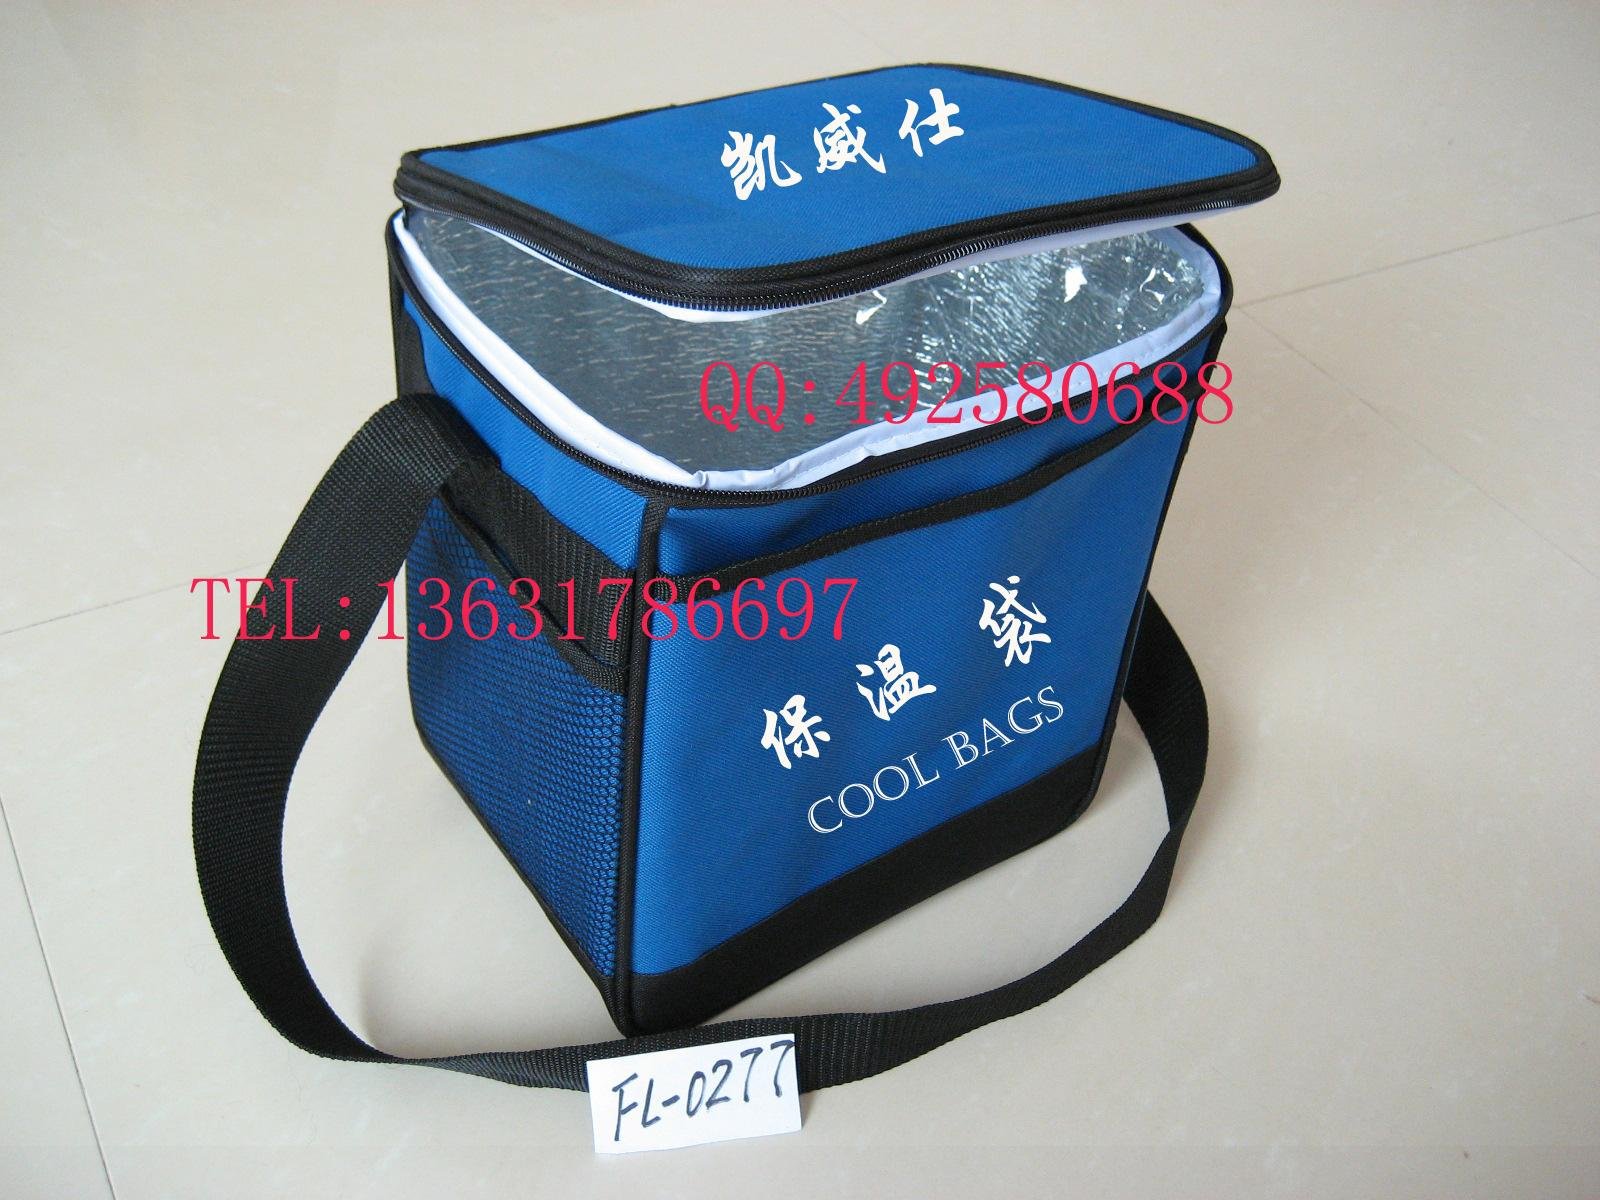 COOL BAG thermal bag ice bag 4